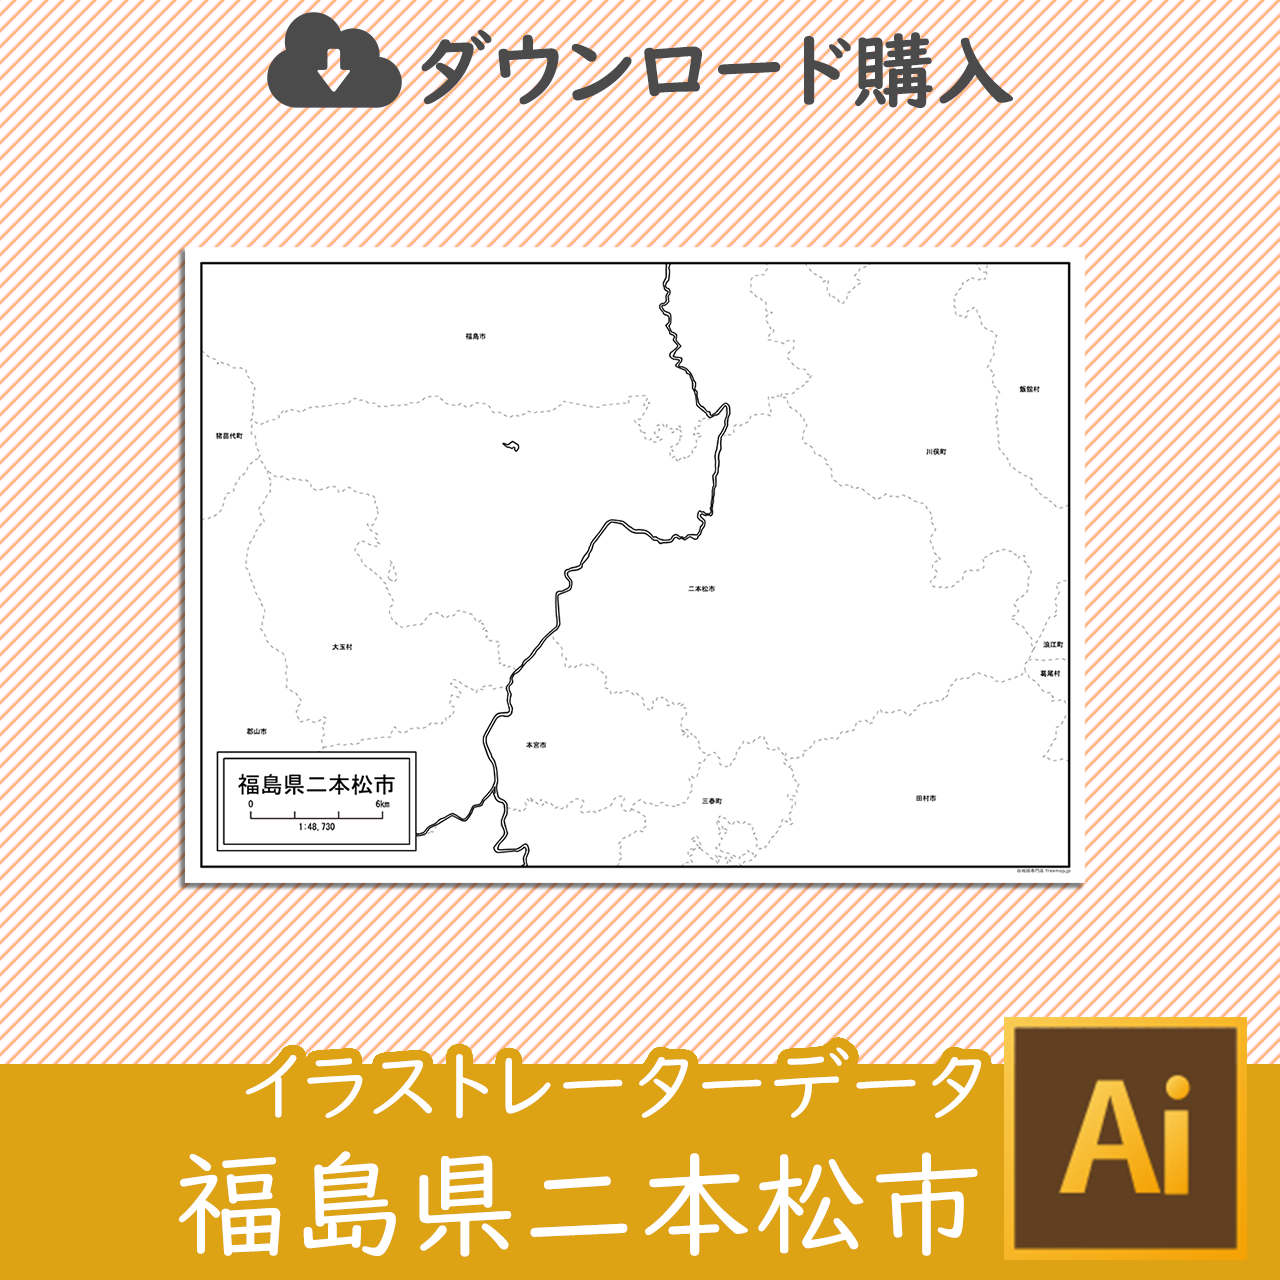 二本松市のaiデータのサムネイル画像